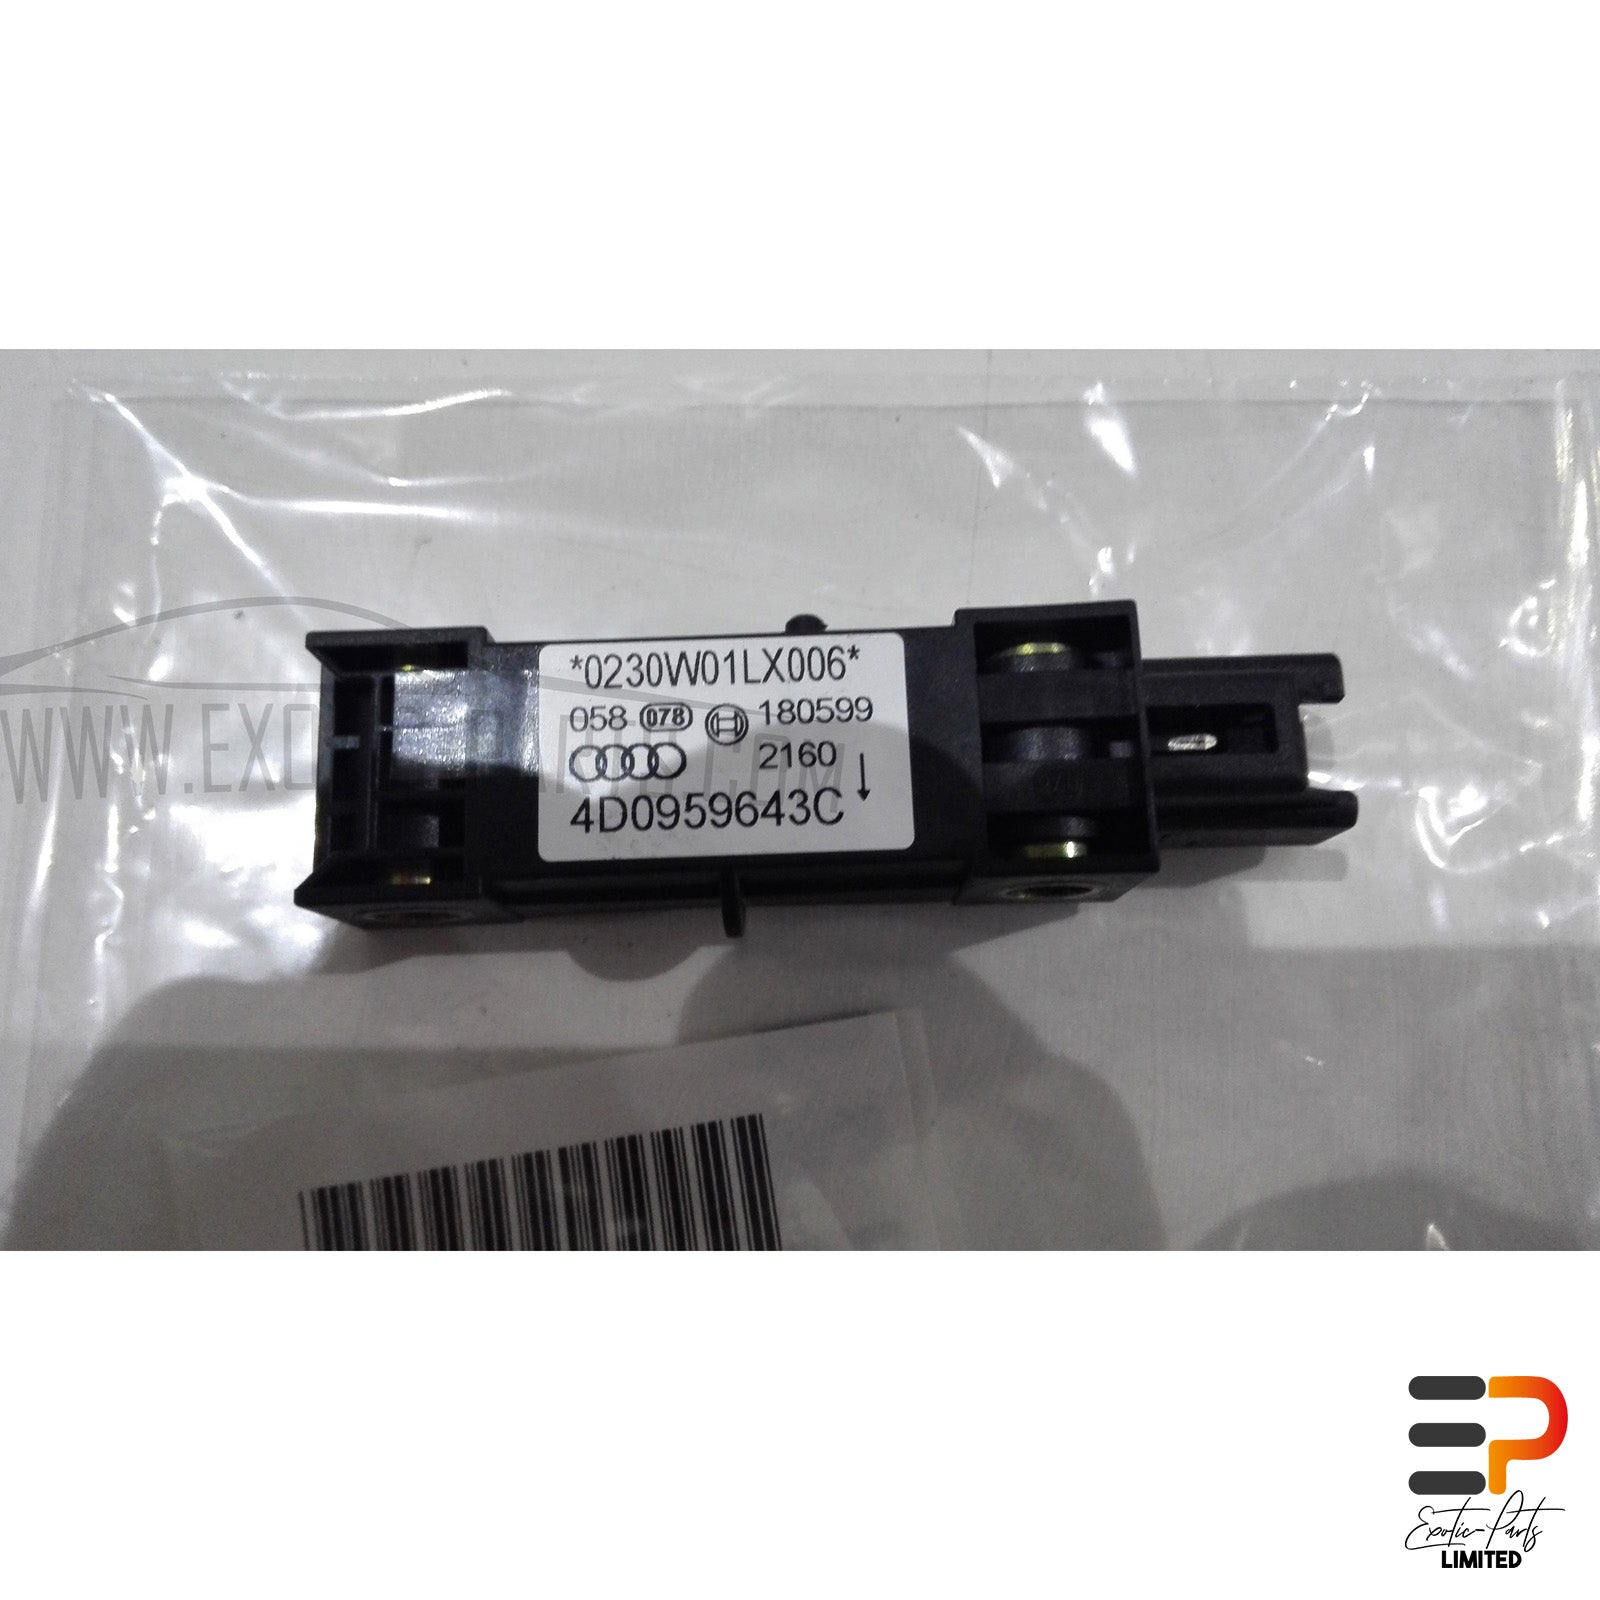 Audi S8 4.2 Quattro Airbag Crash Sensor 4D0959643C picture 1